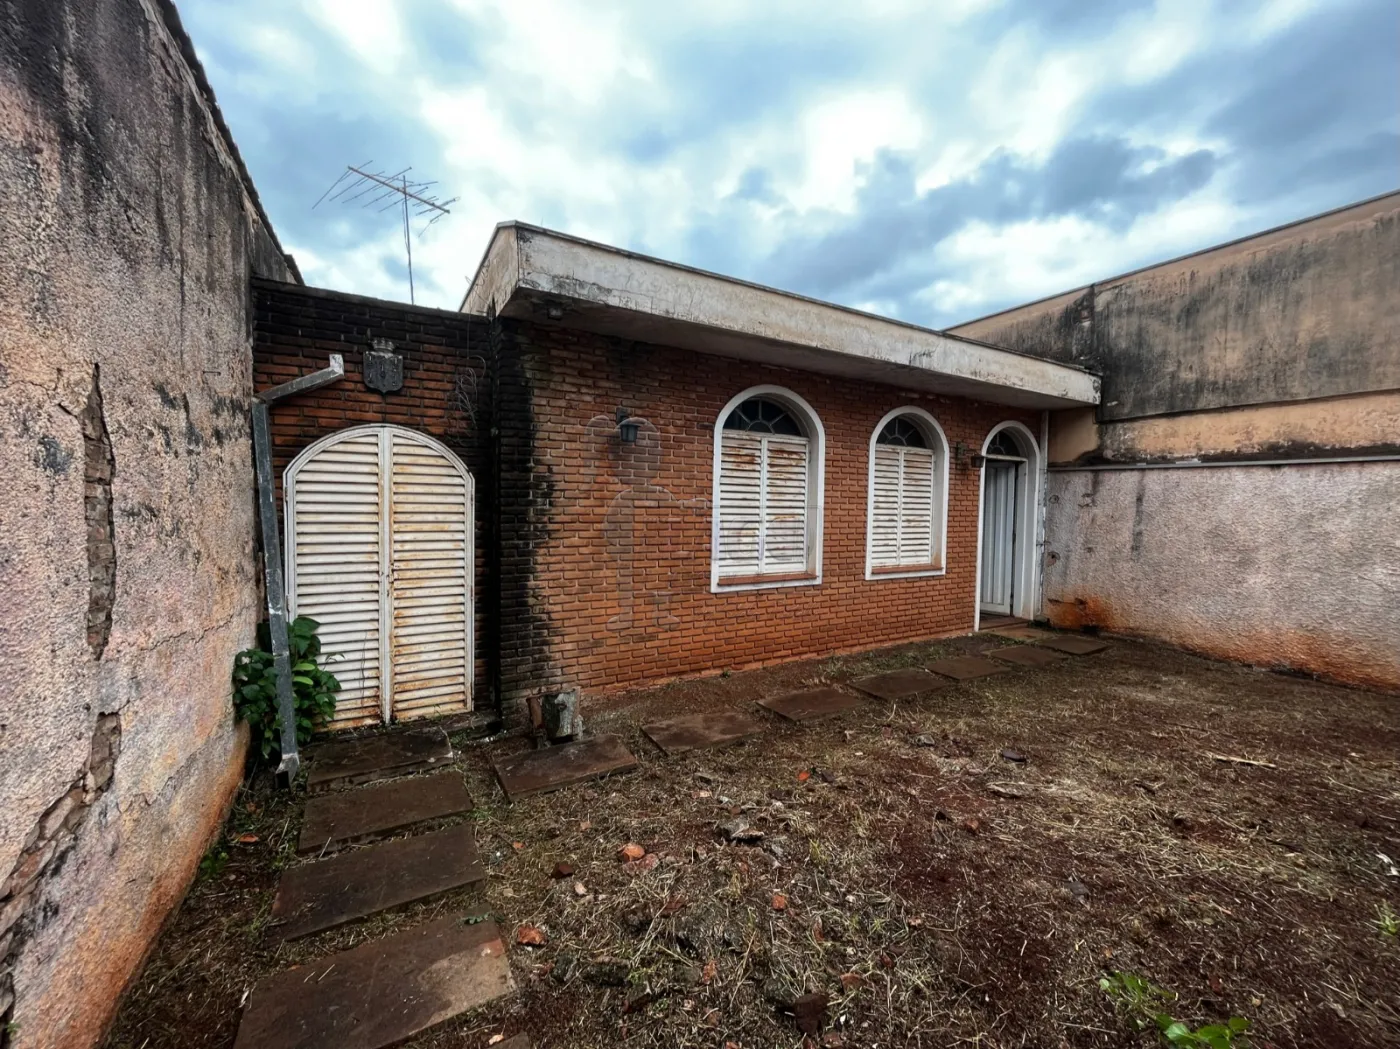 Comprar Casas / Padrão em Ribeirão Preto R$ 360.000,00 - Foto 4